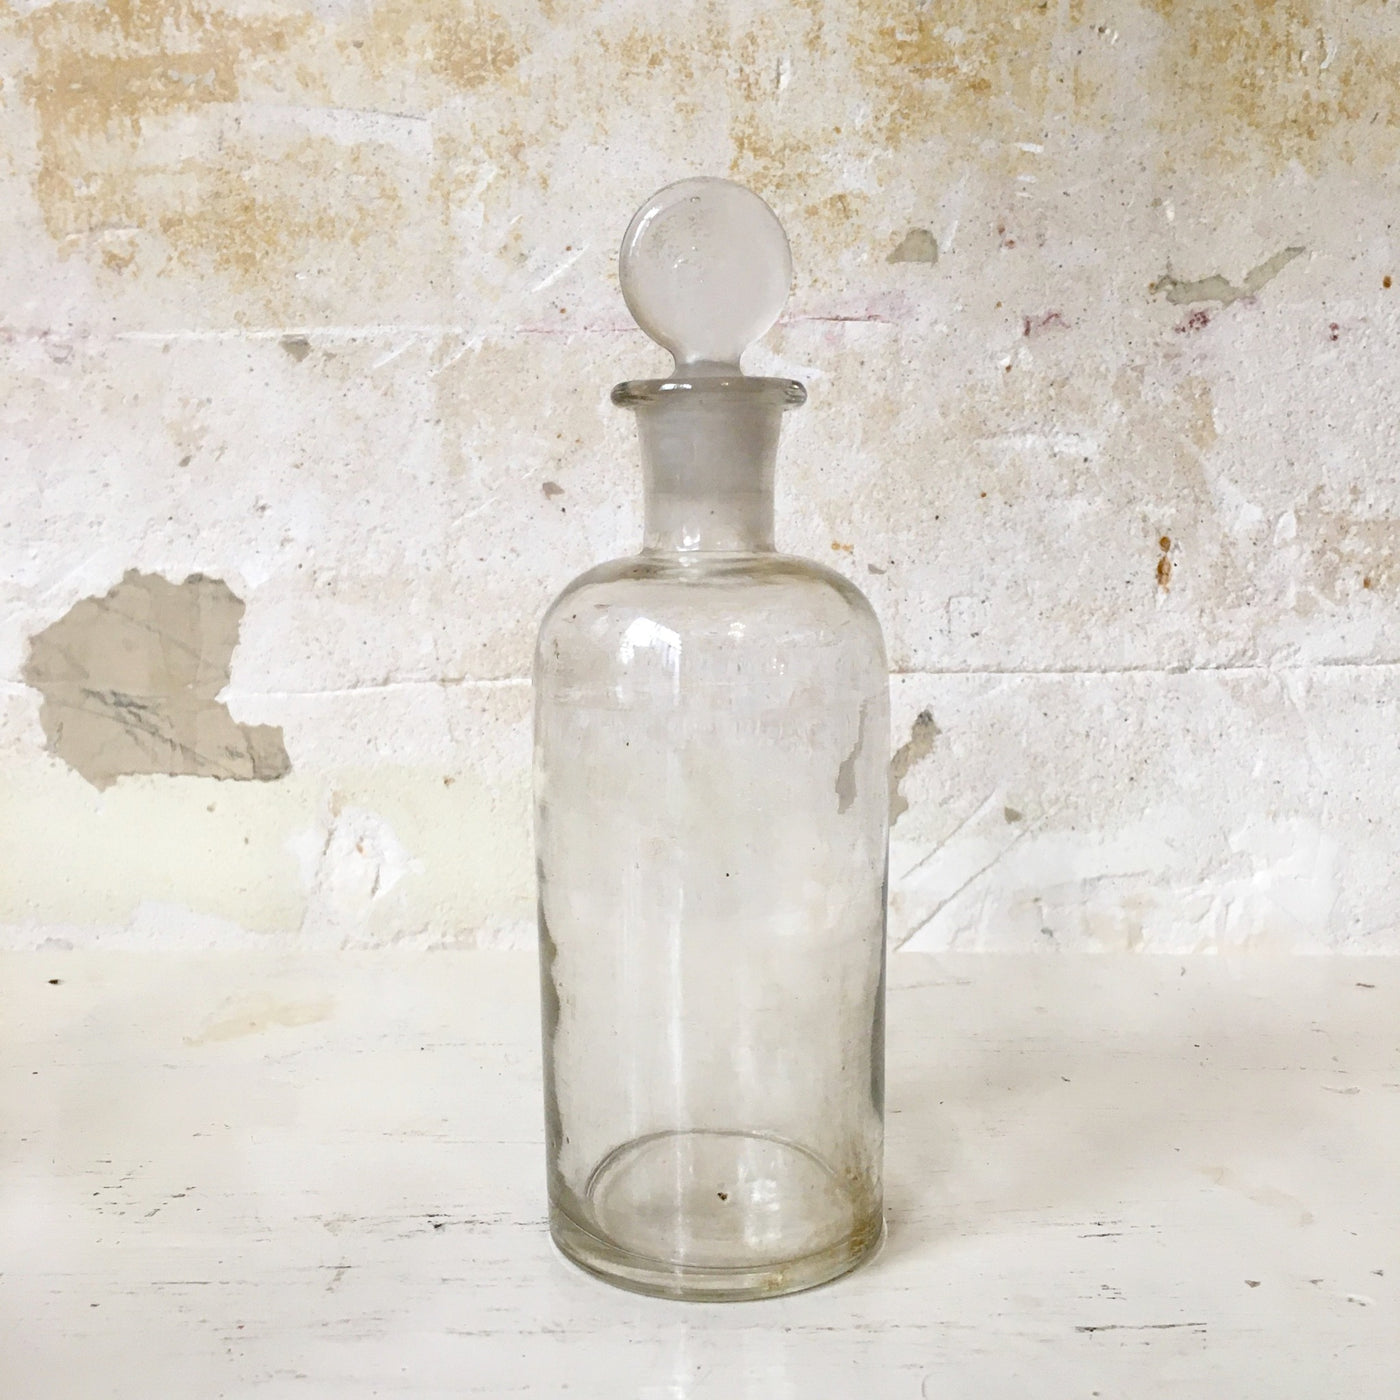 Ancien flacon de pharmacie en verre transparent avec bouchon verre